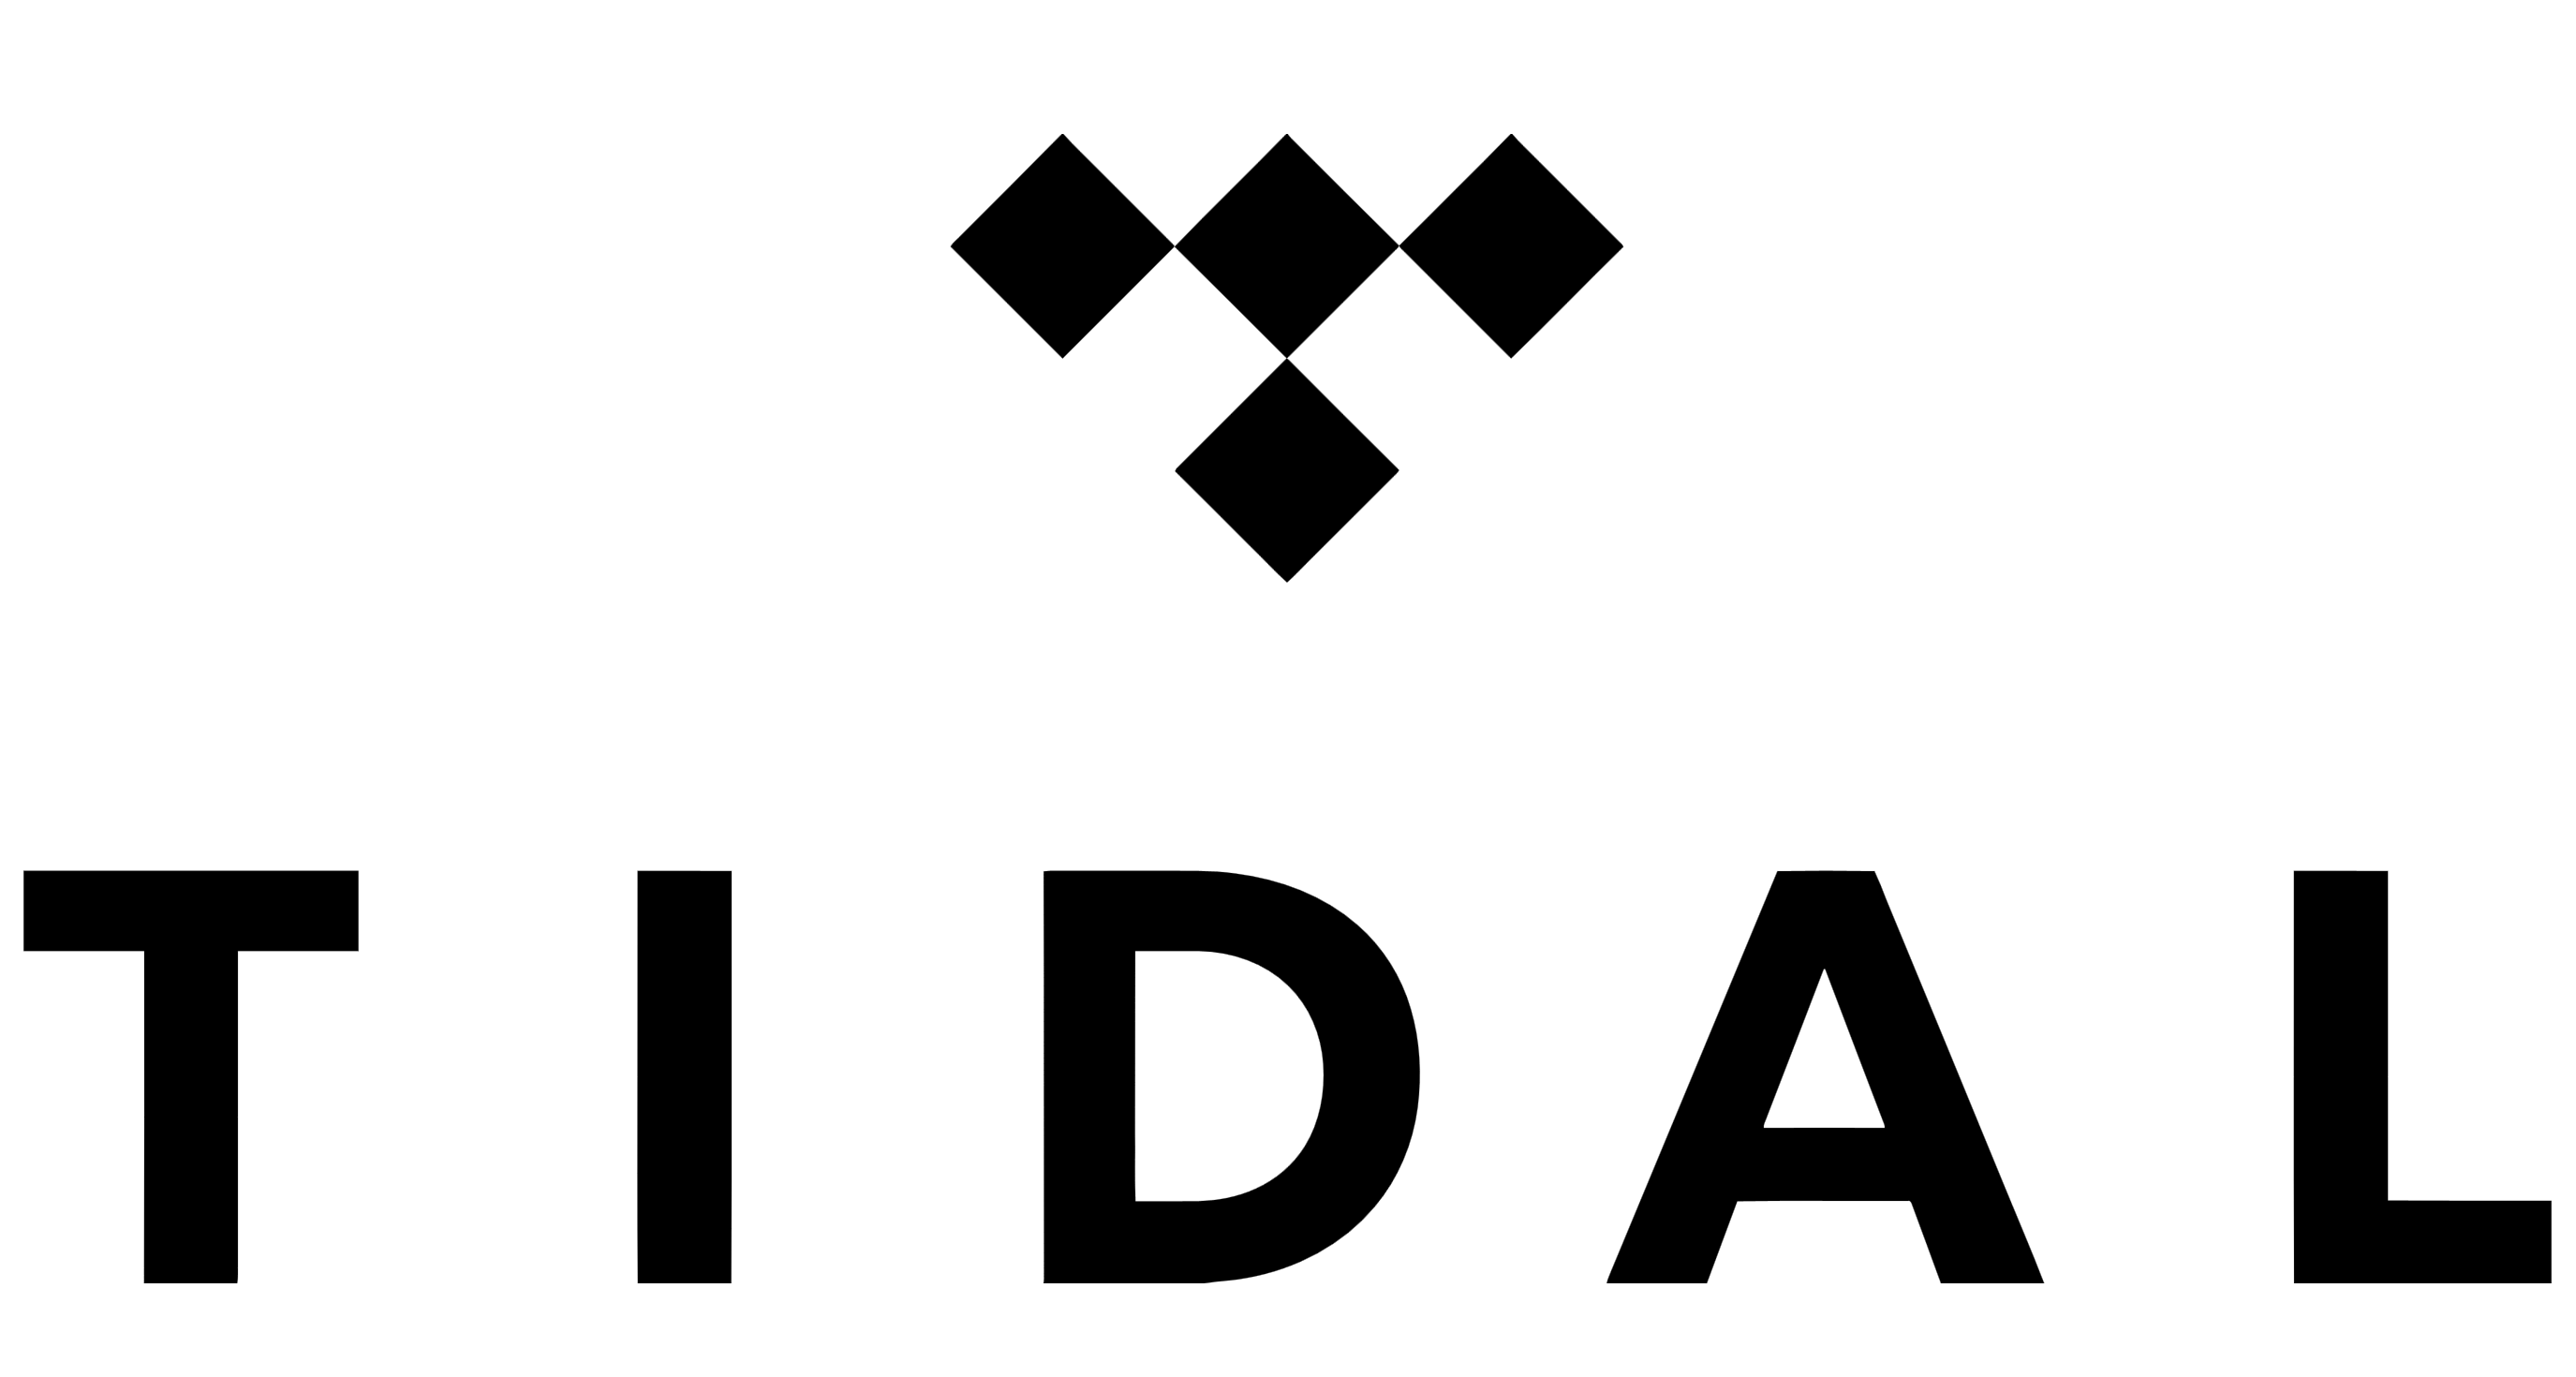 Tidal logo, logotype